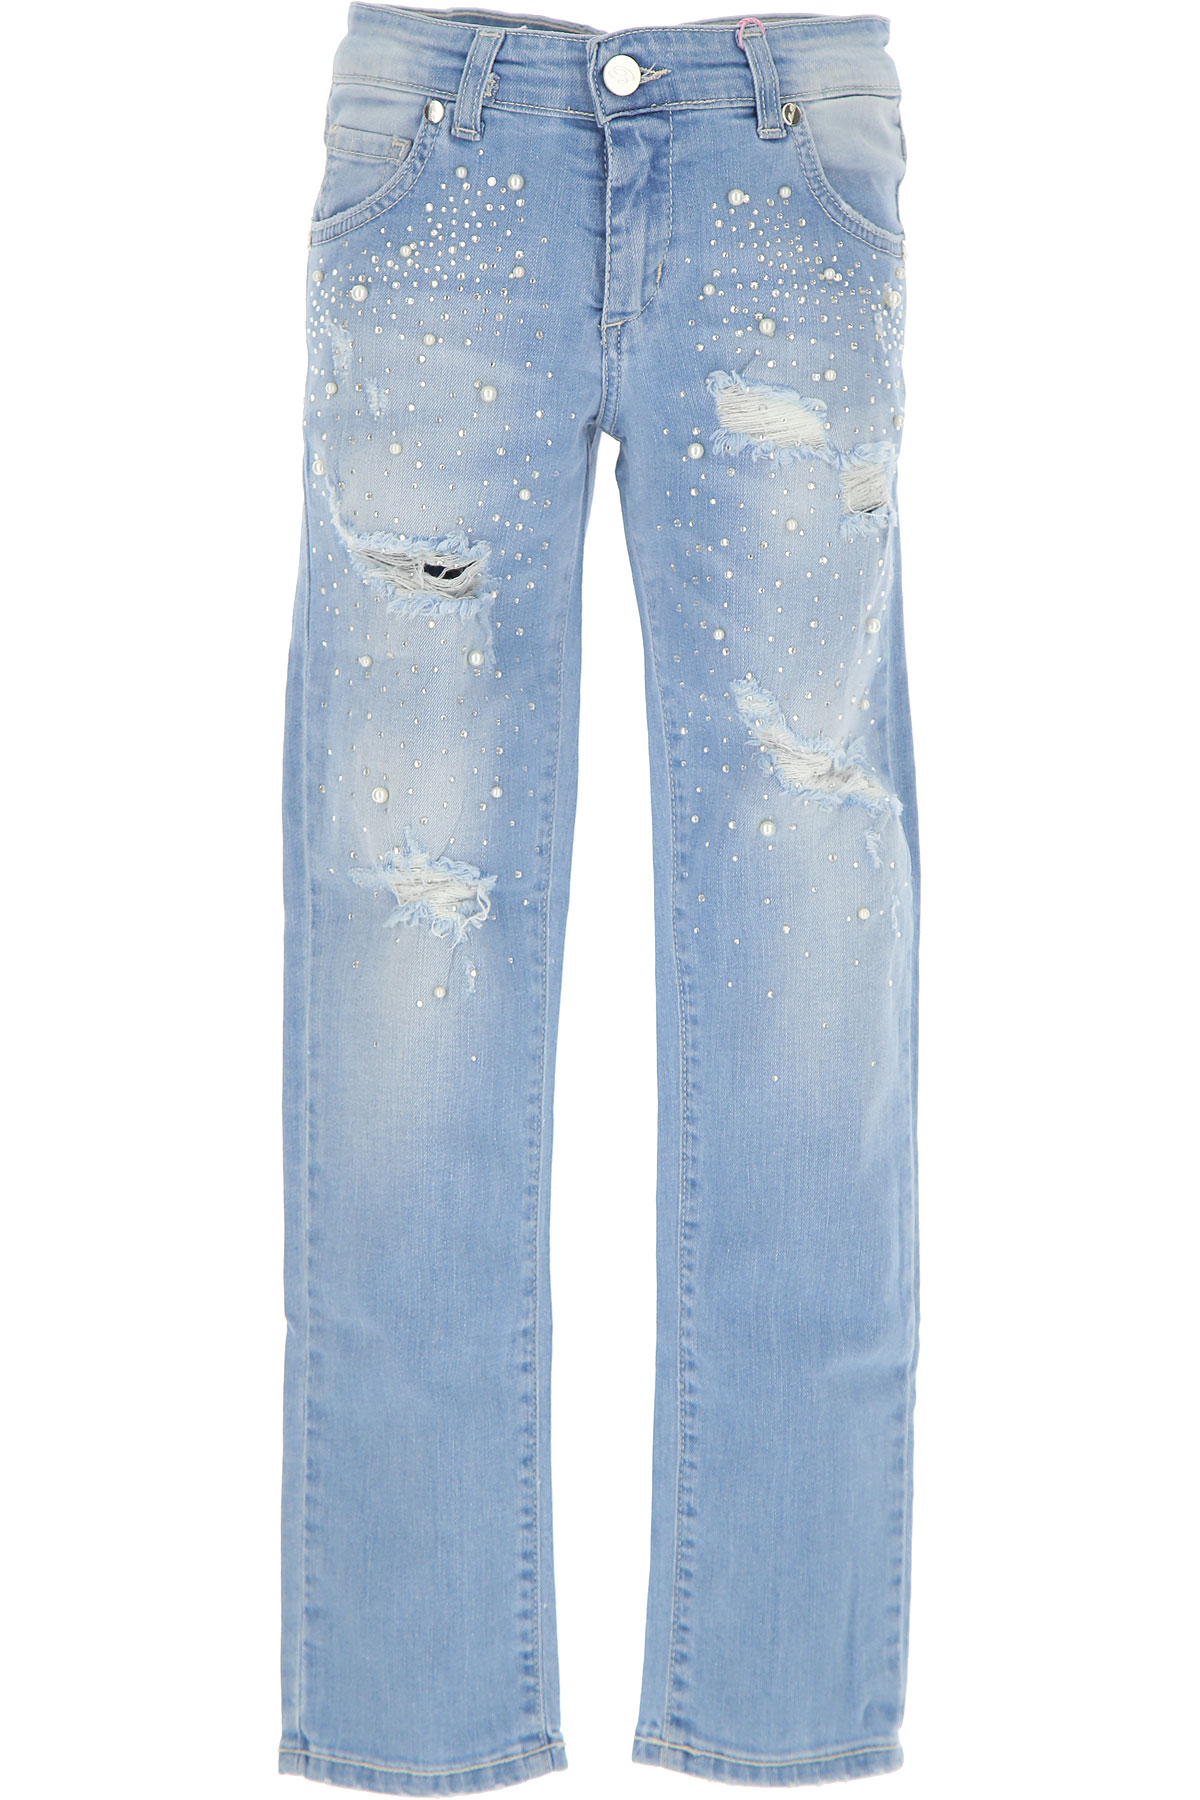 Blumarine Kinder Jeans für Mädchen Günstig im Outlet Sale, Denim Hellblau, Baumwolle, 2017, XXS XL XS (158 cm) M (166 cm)